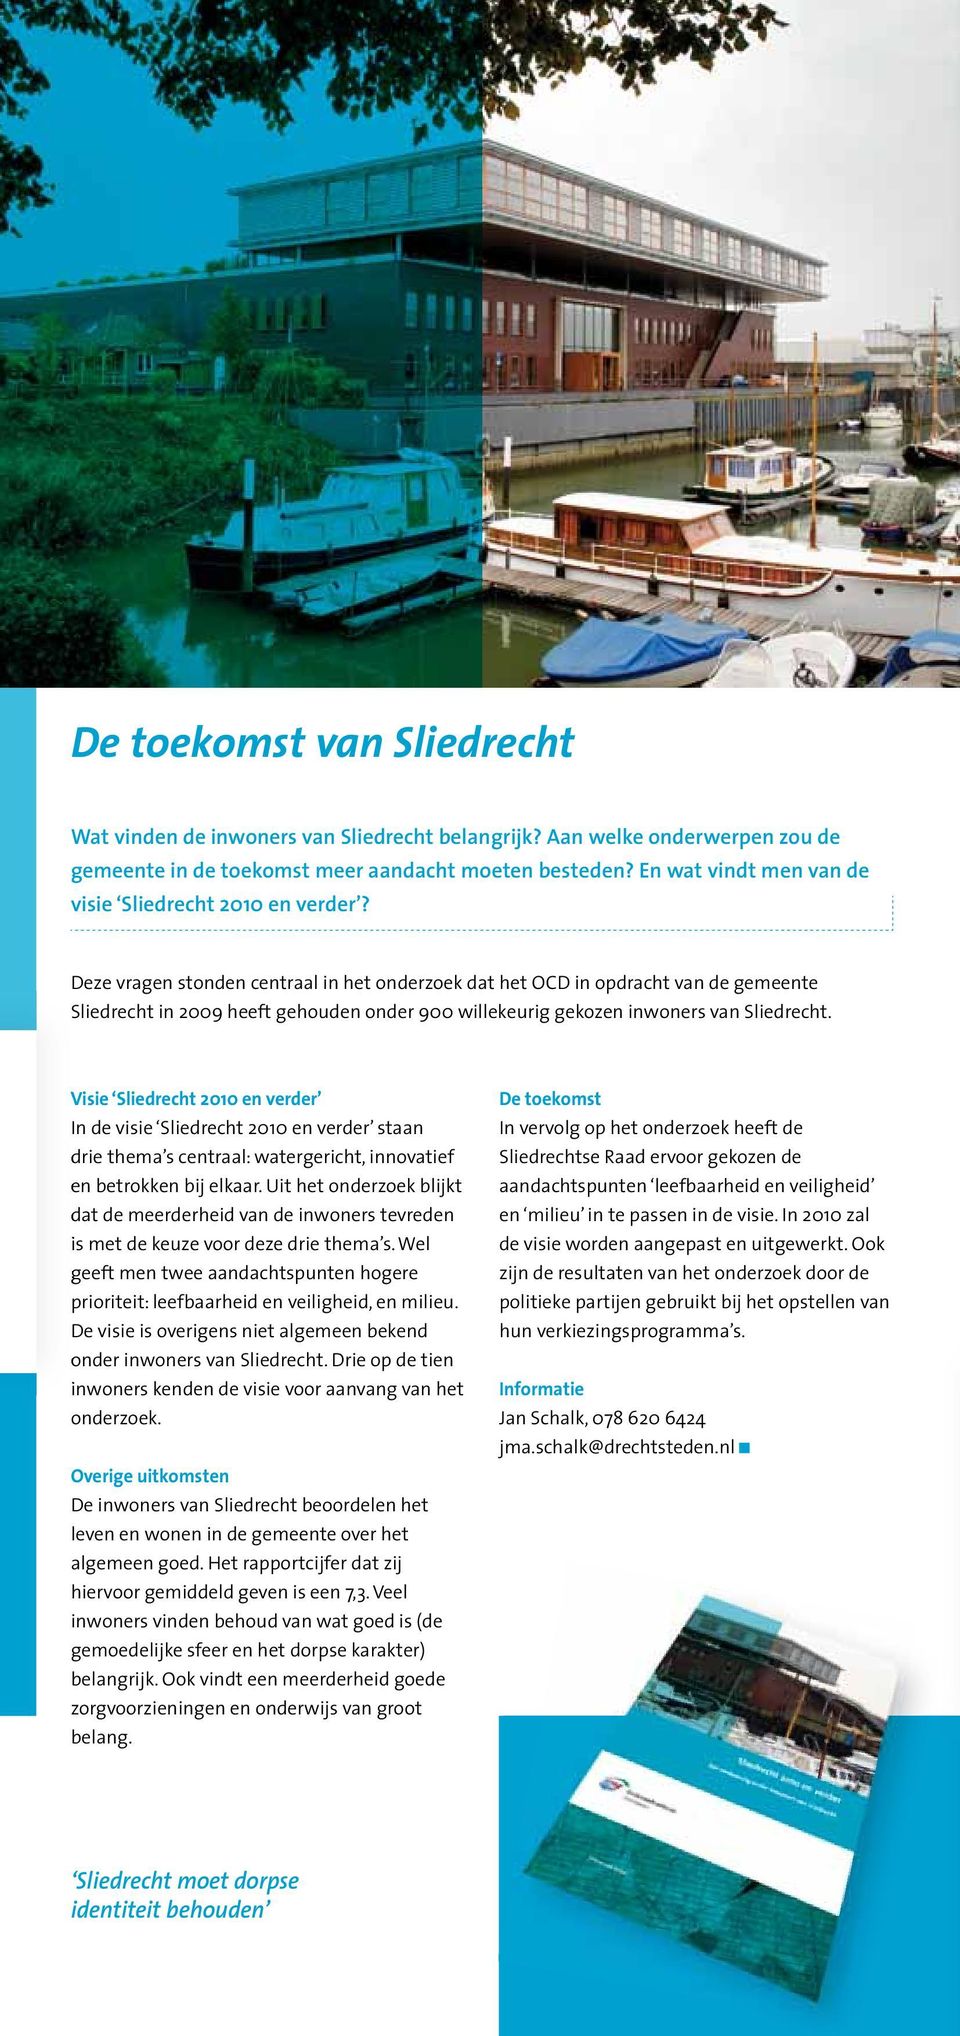 Deze vragen stonden centraal in het onderzoek dat het OCD in opdracht van de gemeente Sliedrecht in 2009 heeft gehouden onder 900 willekeurig gekozen inwoners van Sliedrecht.